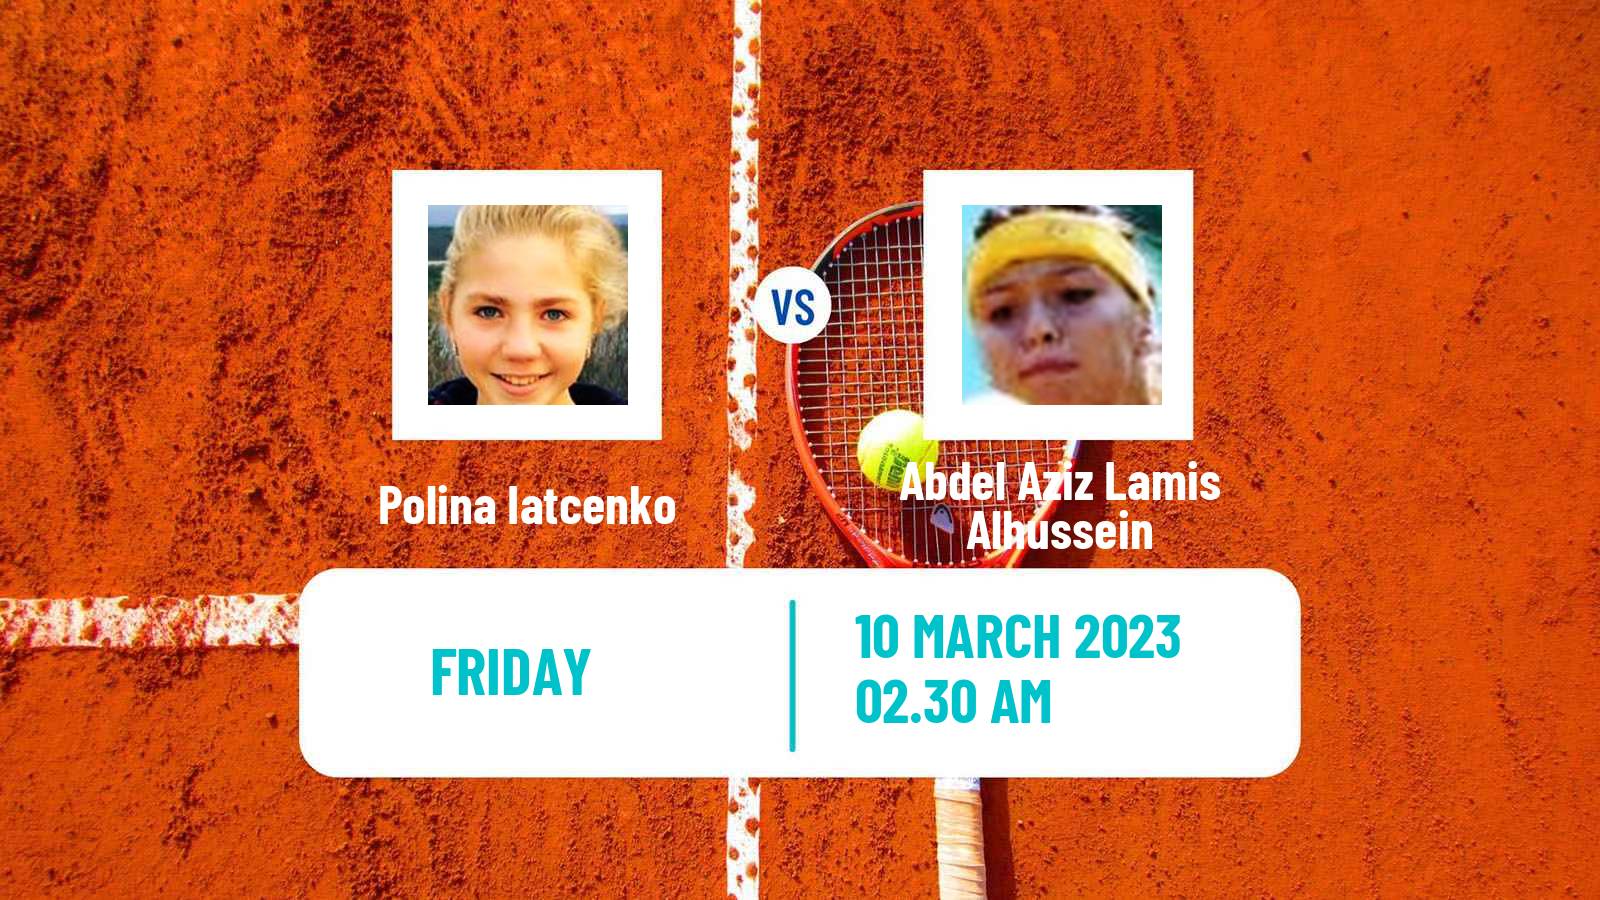 Tennis ITF Tournaments Polina Iatcenko - Abdel Aziz Lamis Alhussein